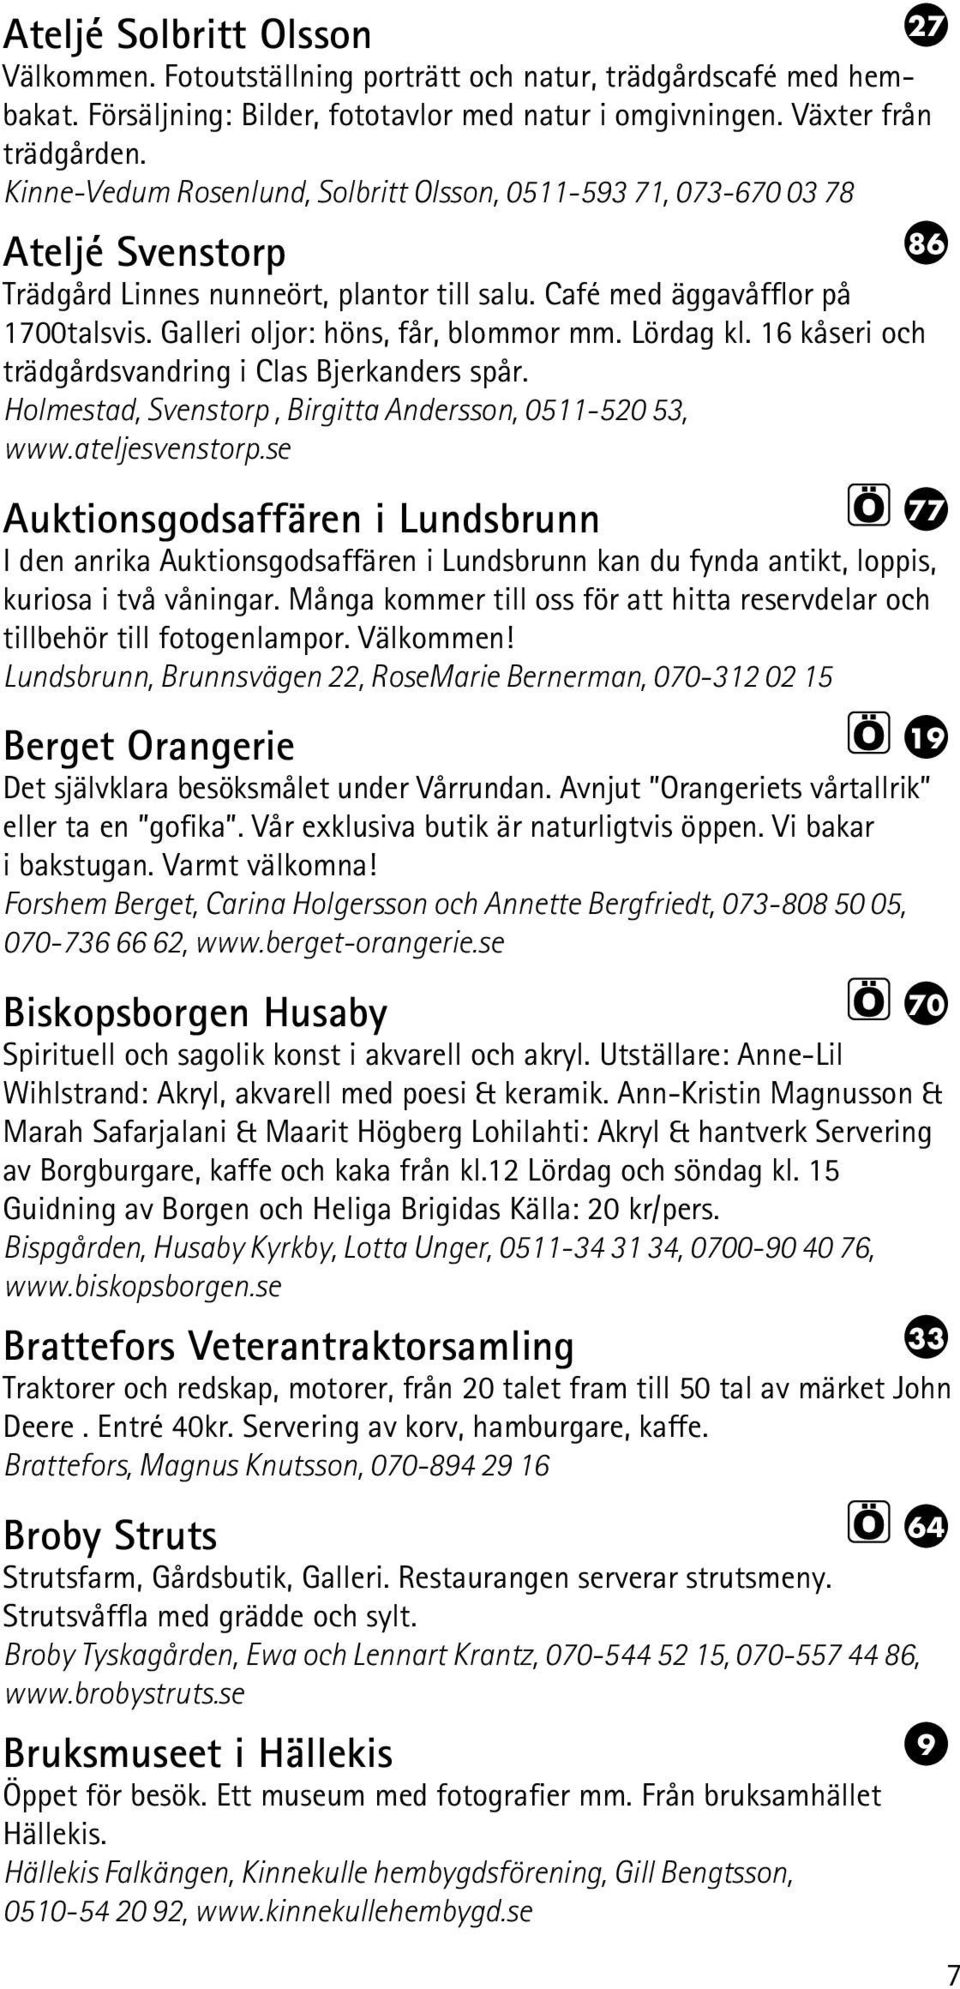 Galleri oljor: höns, får, blommor mm. Lördag kl. 16 kåseri och trädgårdsvandring i Clas Bjerkanders spår. Holmestad, Svenstorp, Birgitta Andersson, 0511-520 53, www.ateljesvenstorp.